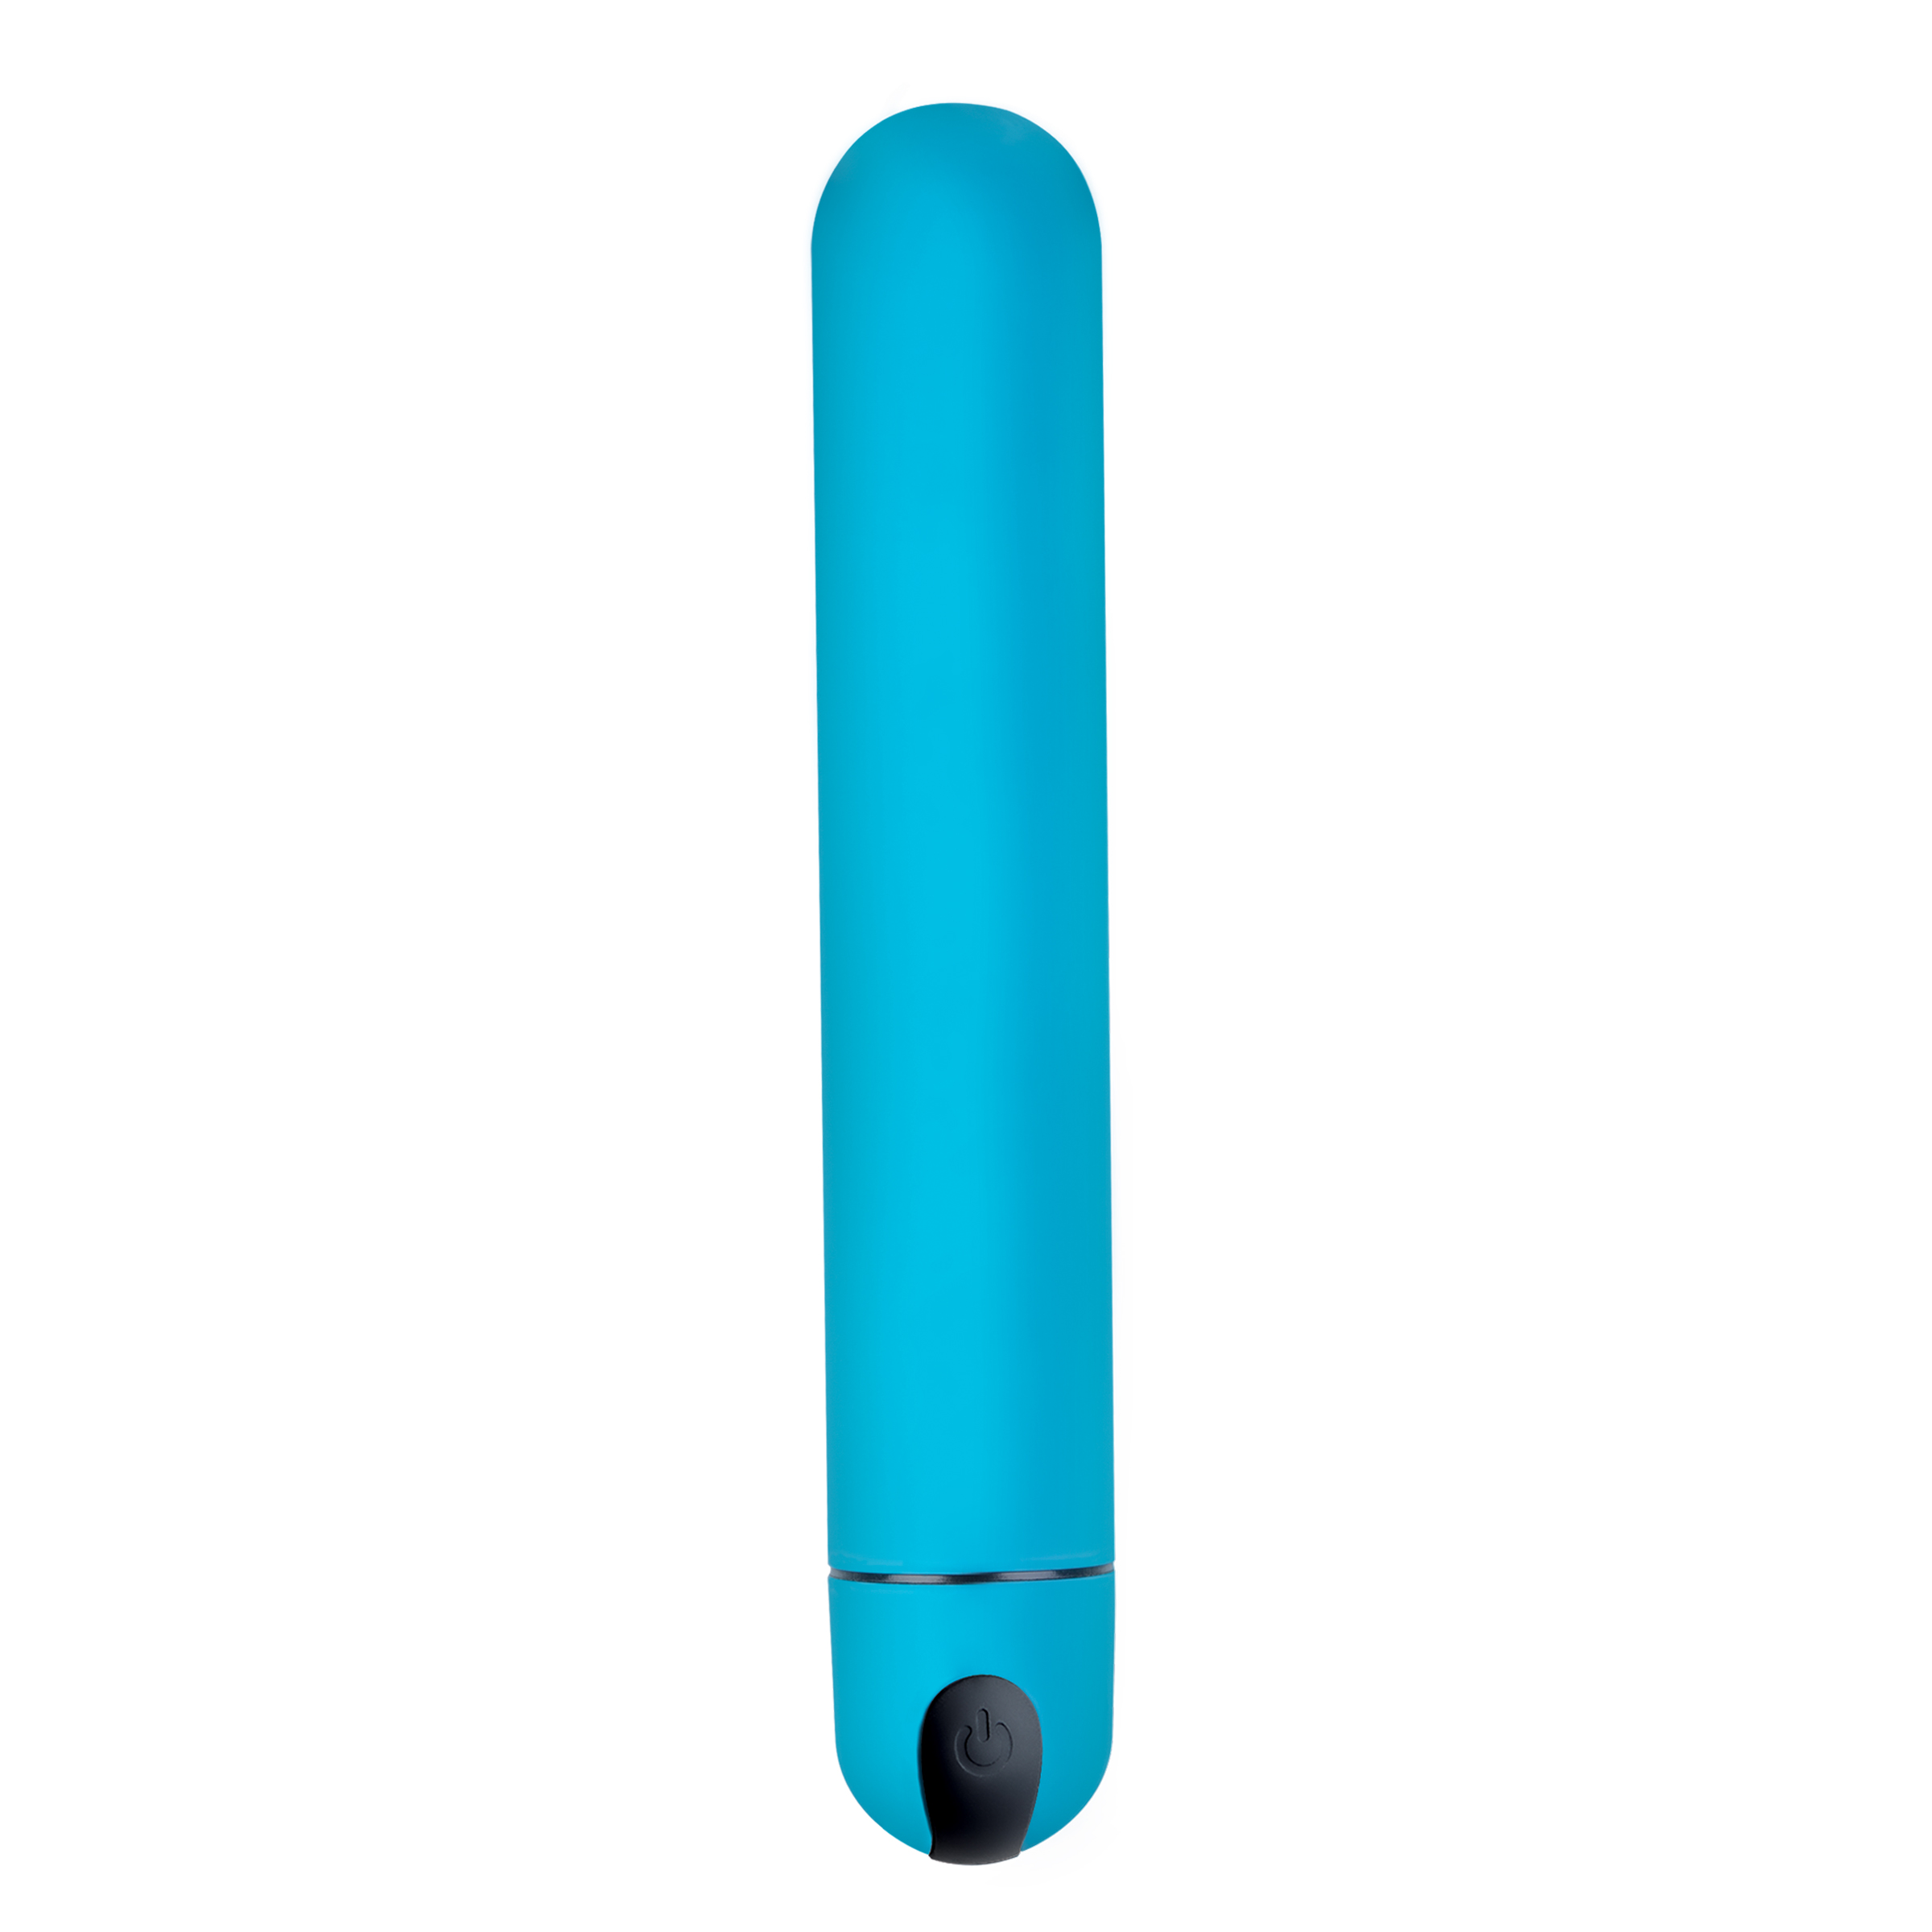 XL Bullet Vibrator – Blue